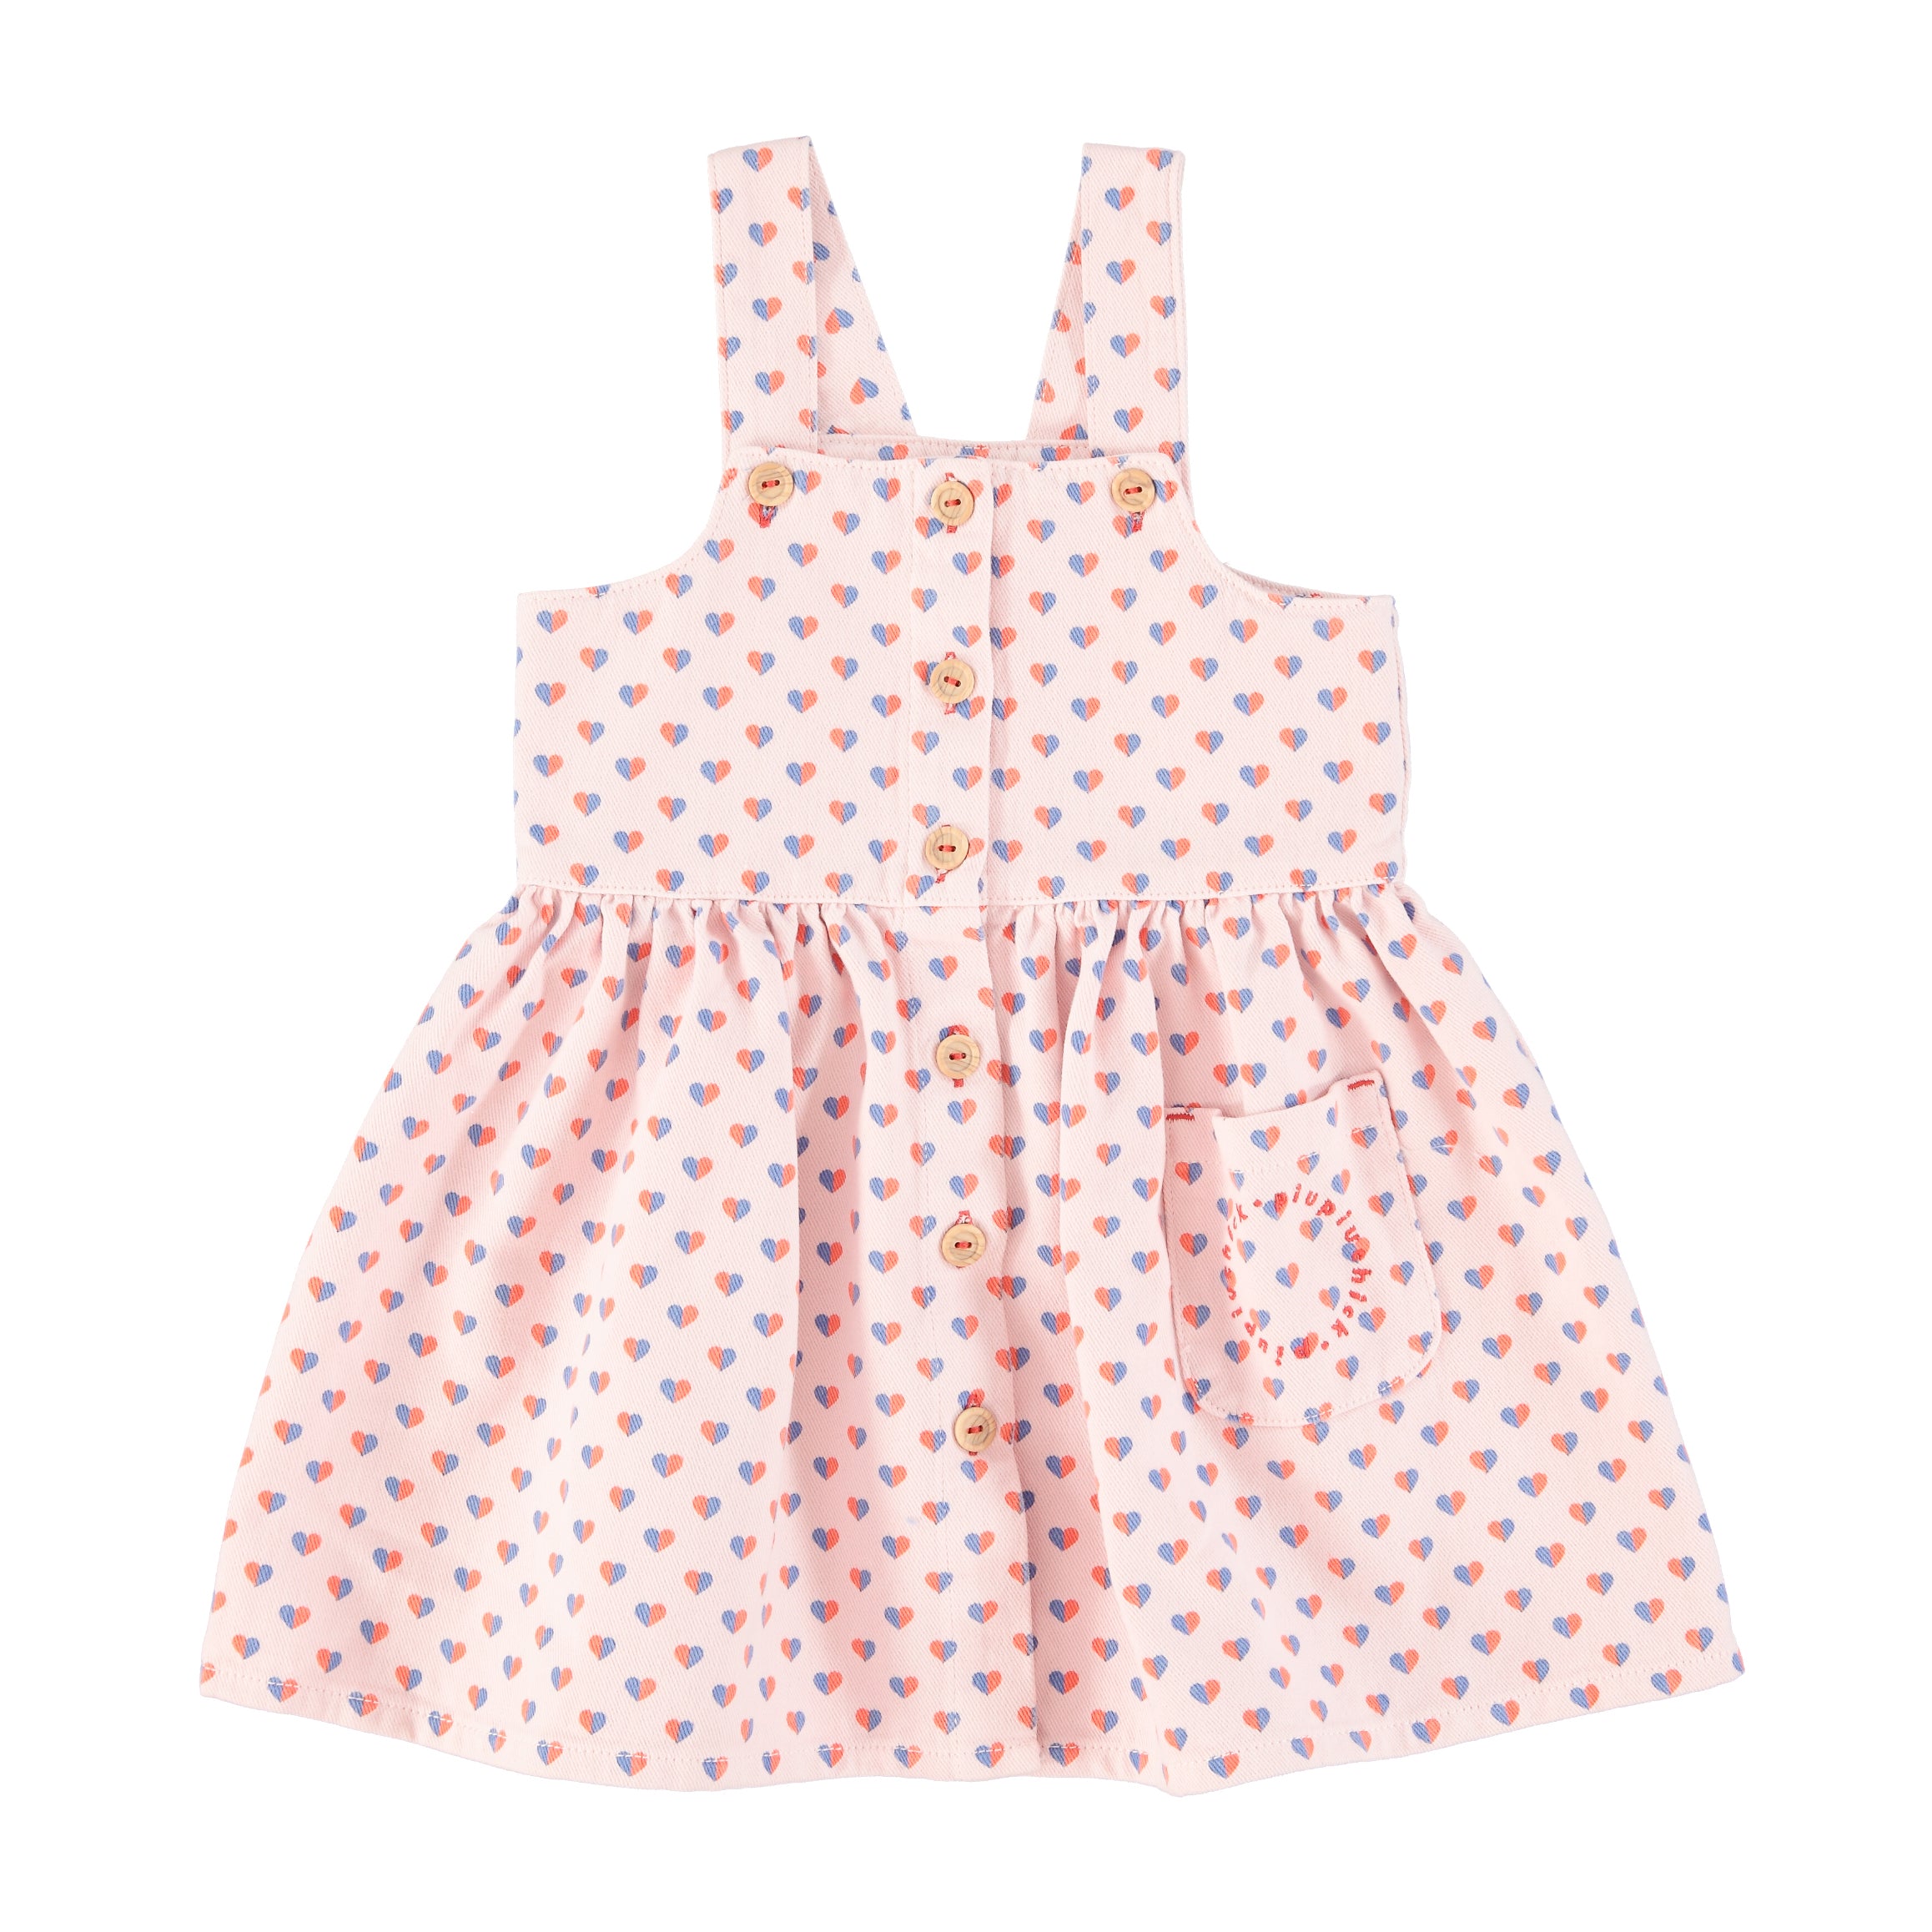 Piupiuchick Light Pink Hearts Short Dress – Panda and Cub